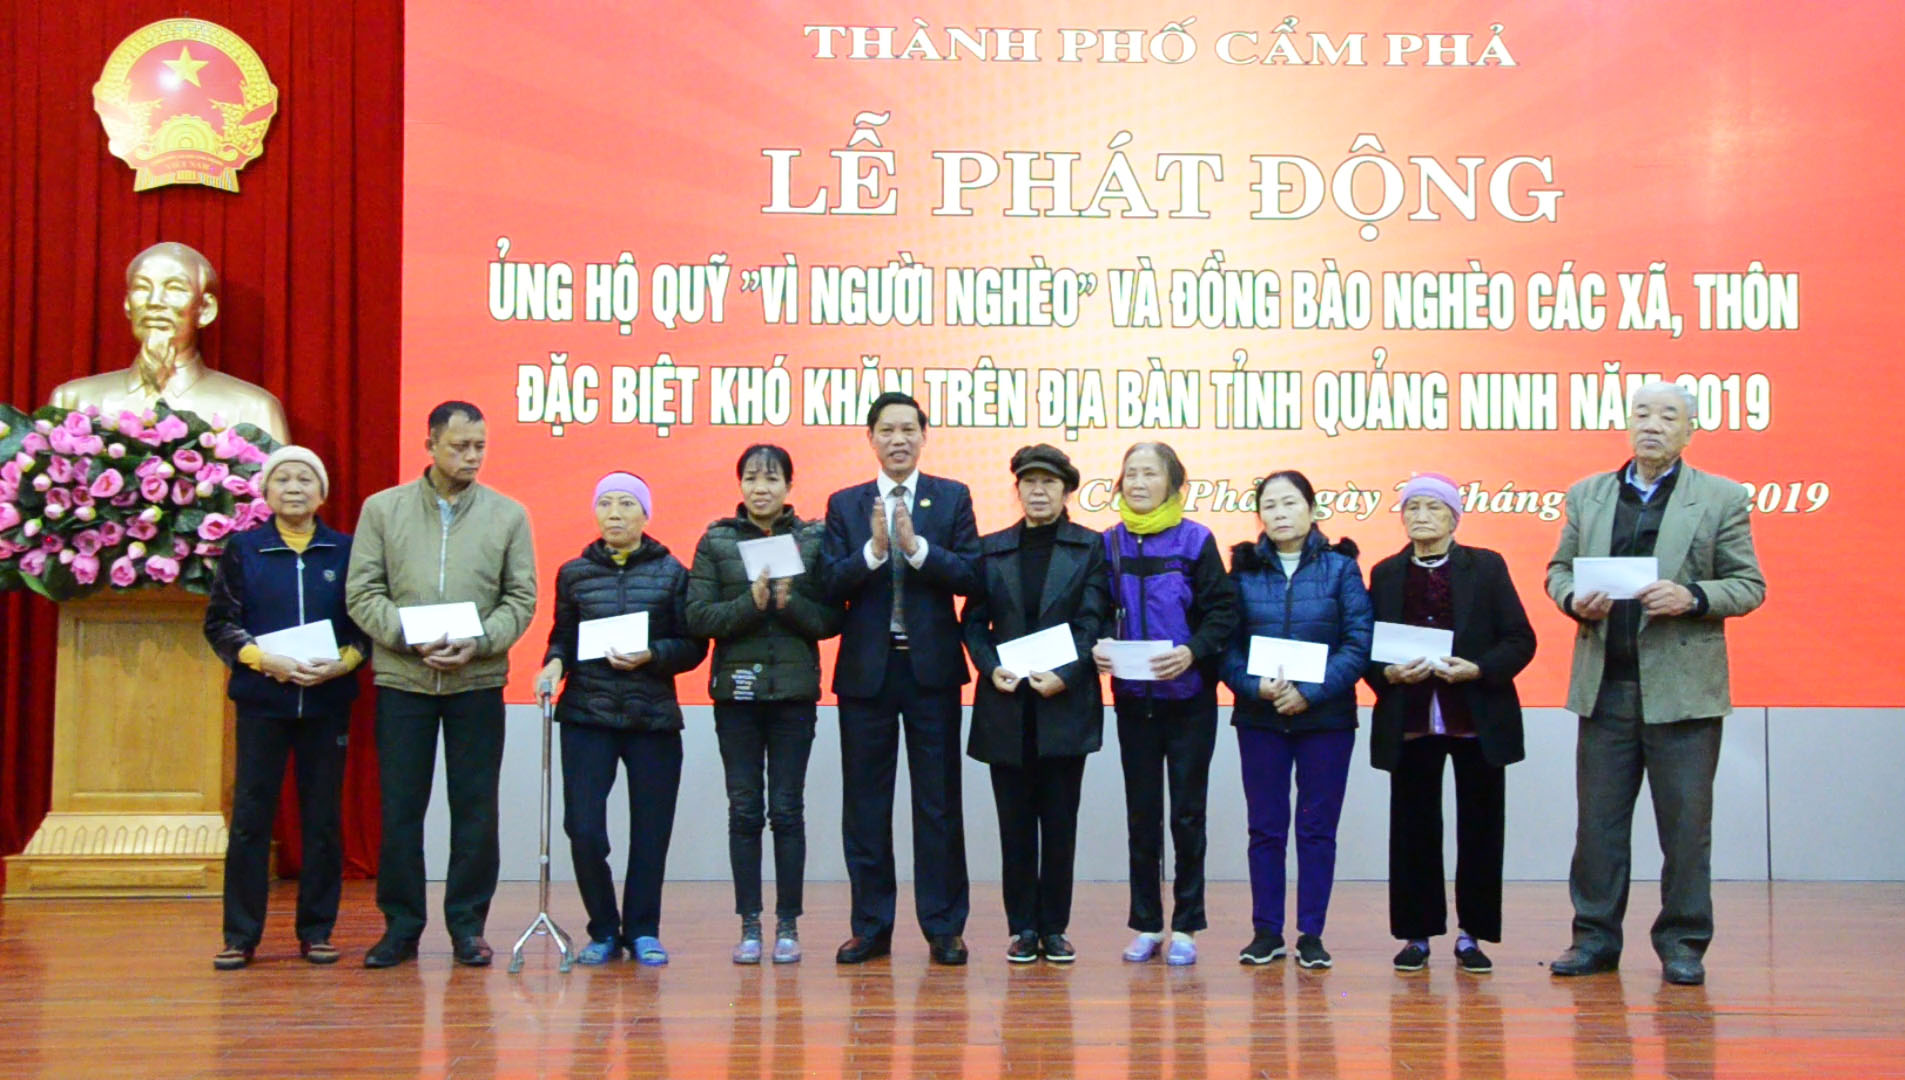 Thành phố Cẩm Phả trao thưởng cho 34 hộ thoát nghèo trong năm 2019 (Ảnh: Vũ Hiền-CTV)